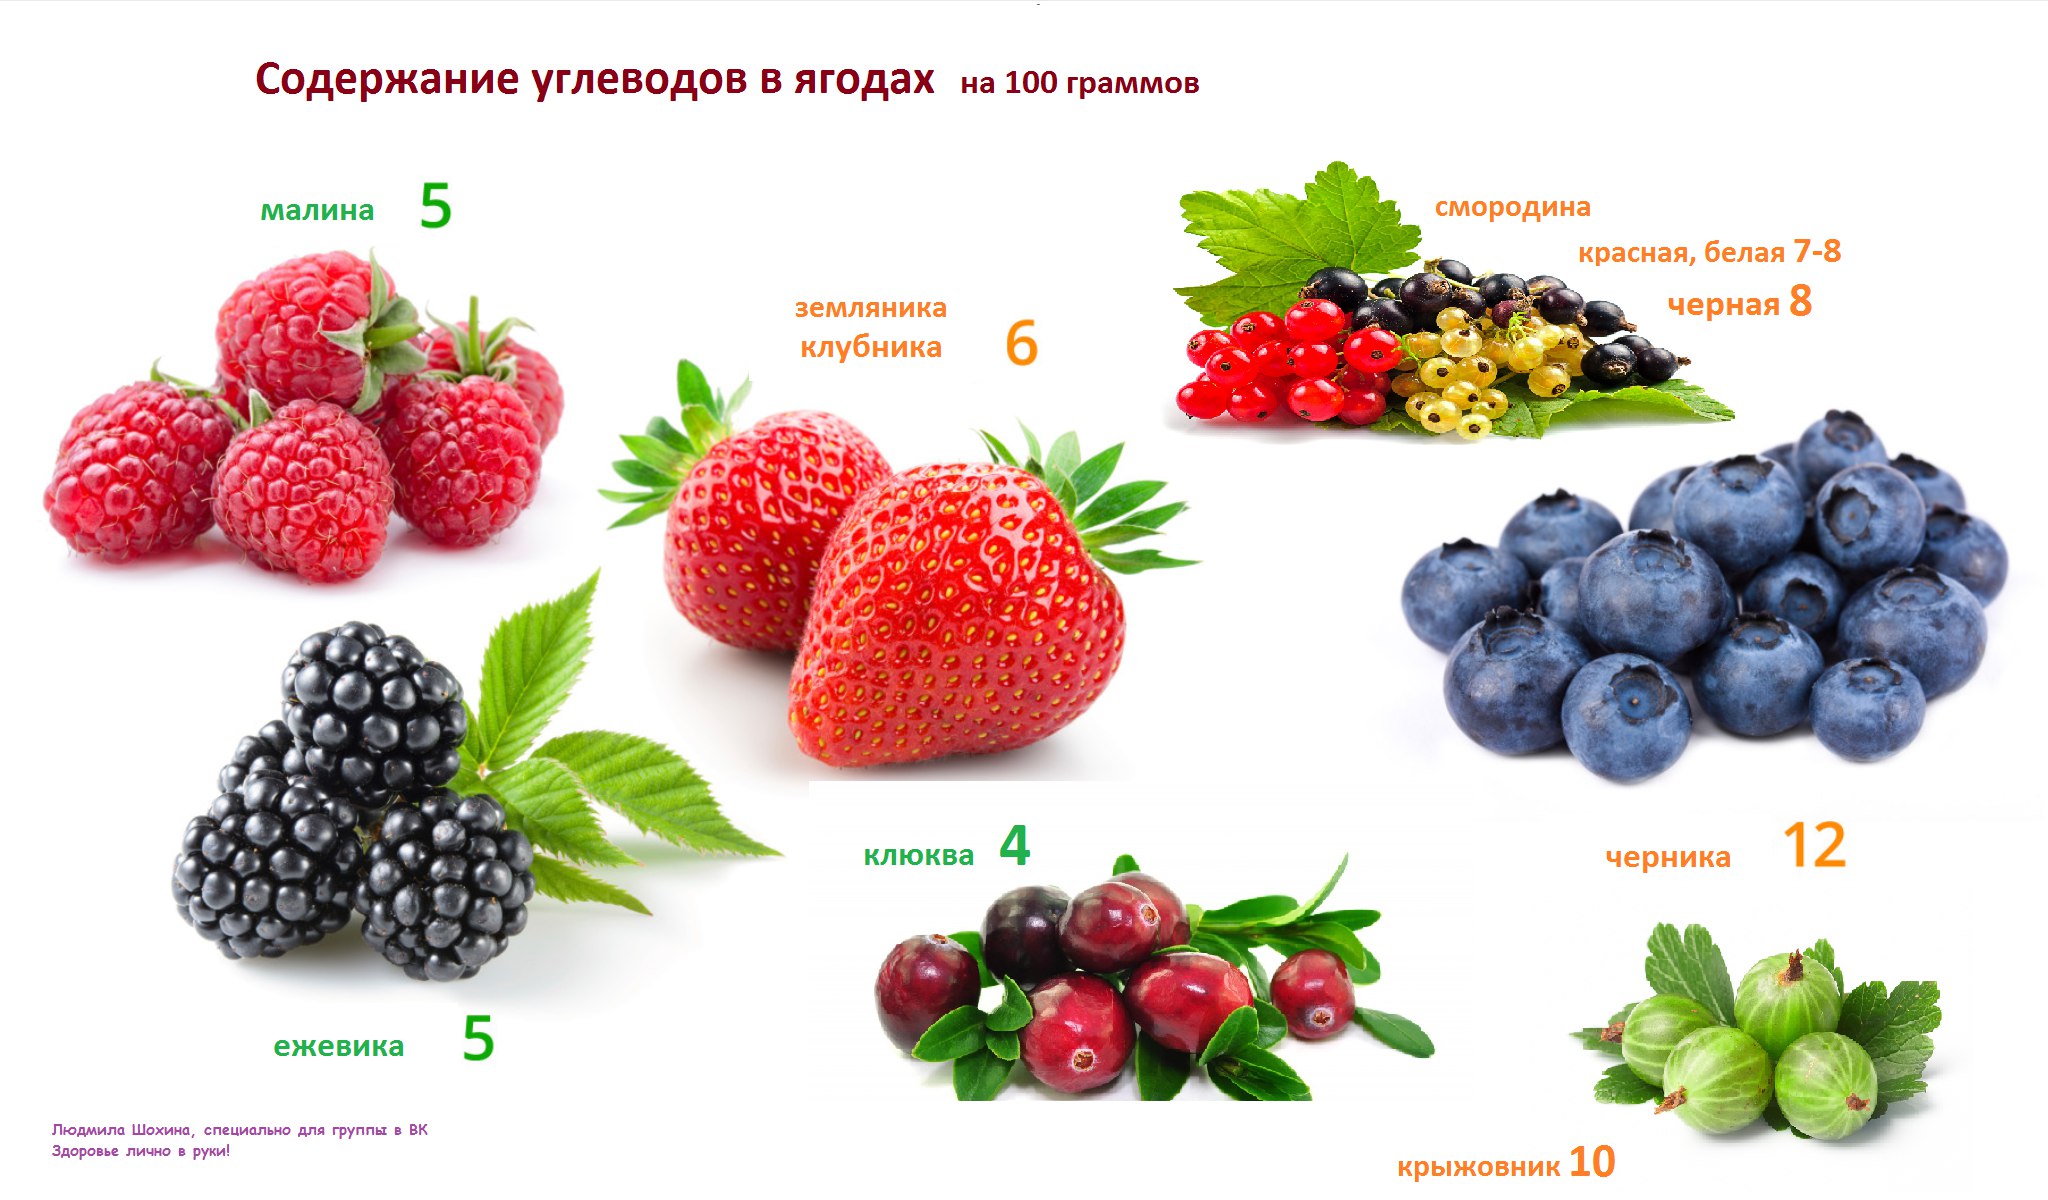 Содержание углеводов в ягодах